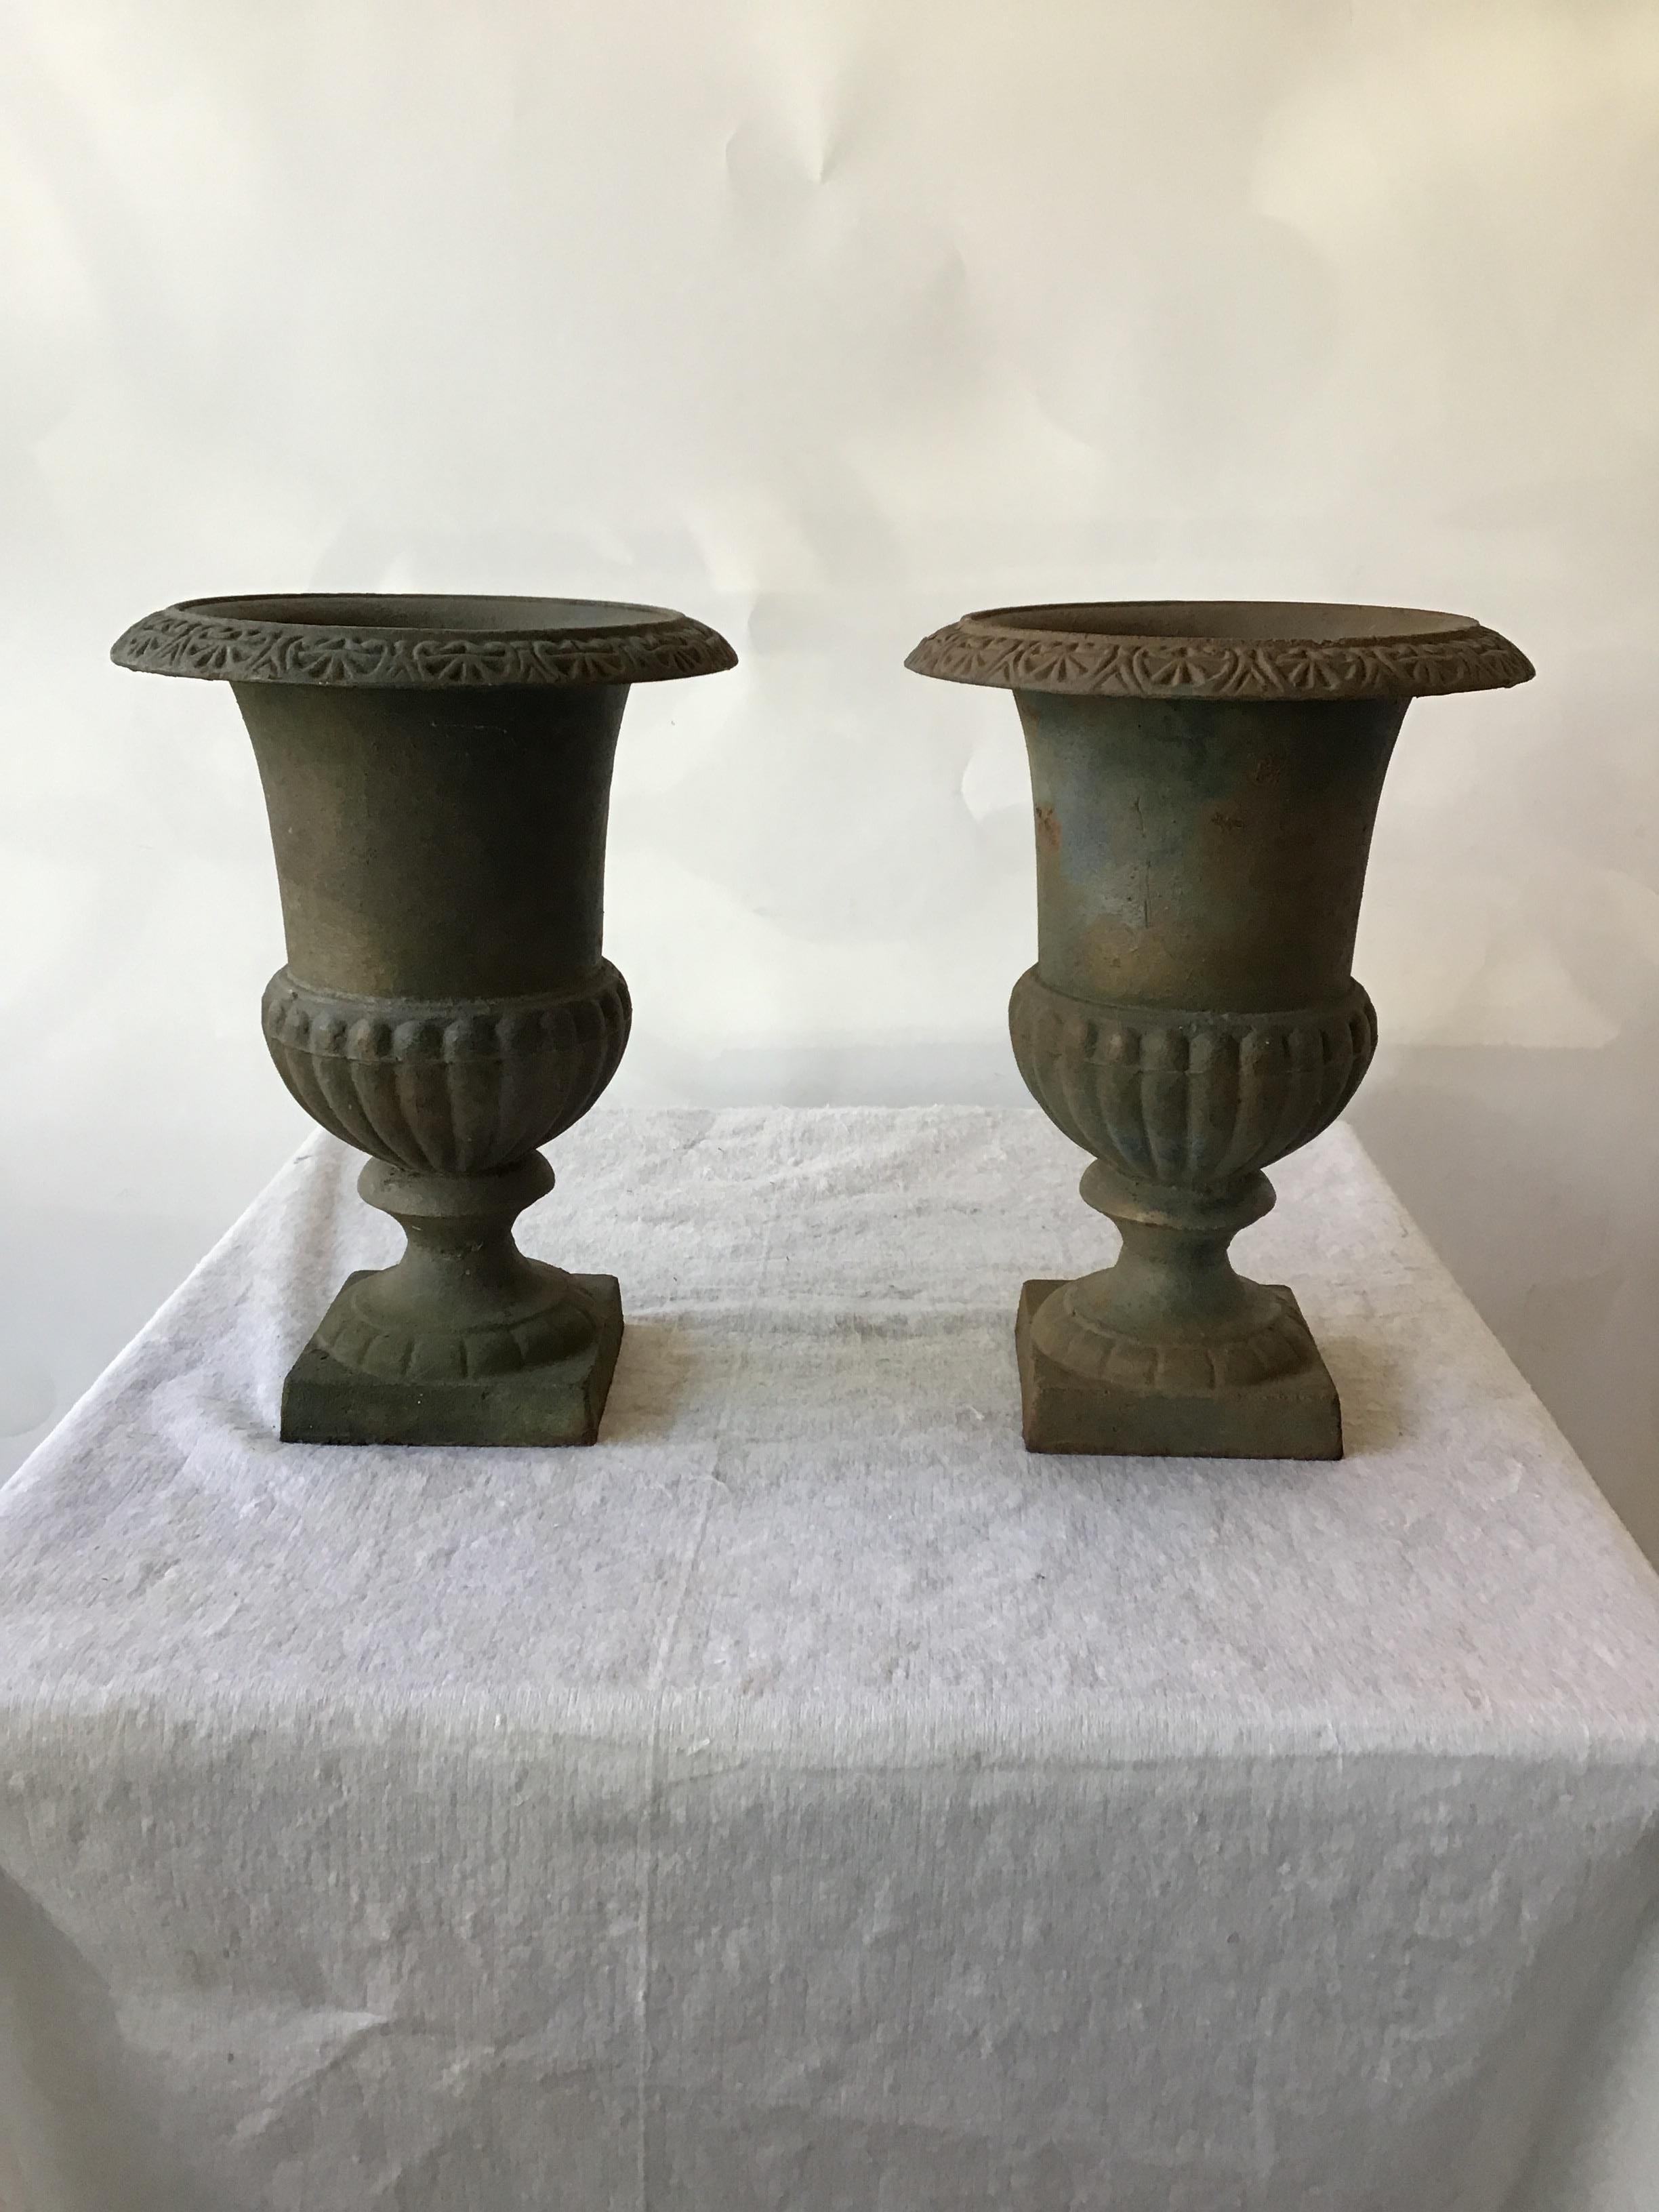 Pair of iron urns.